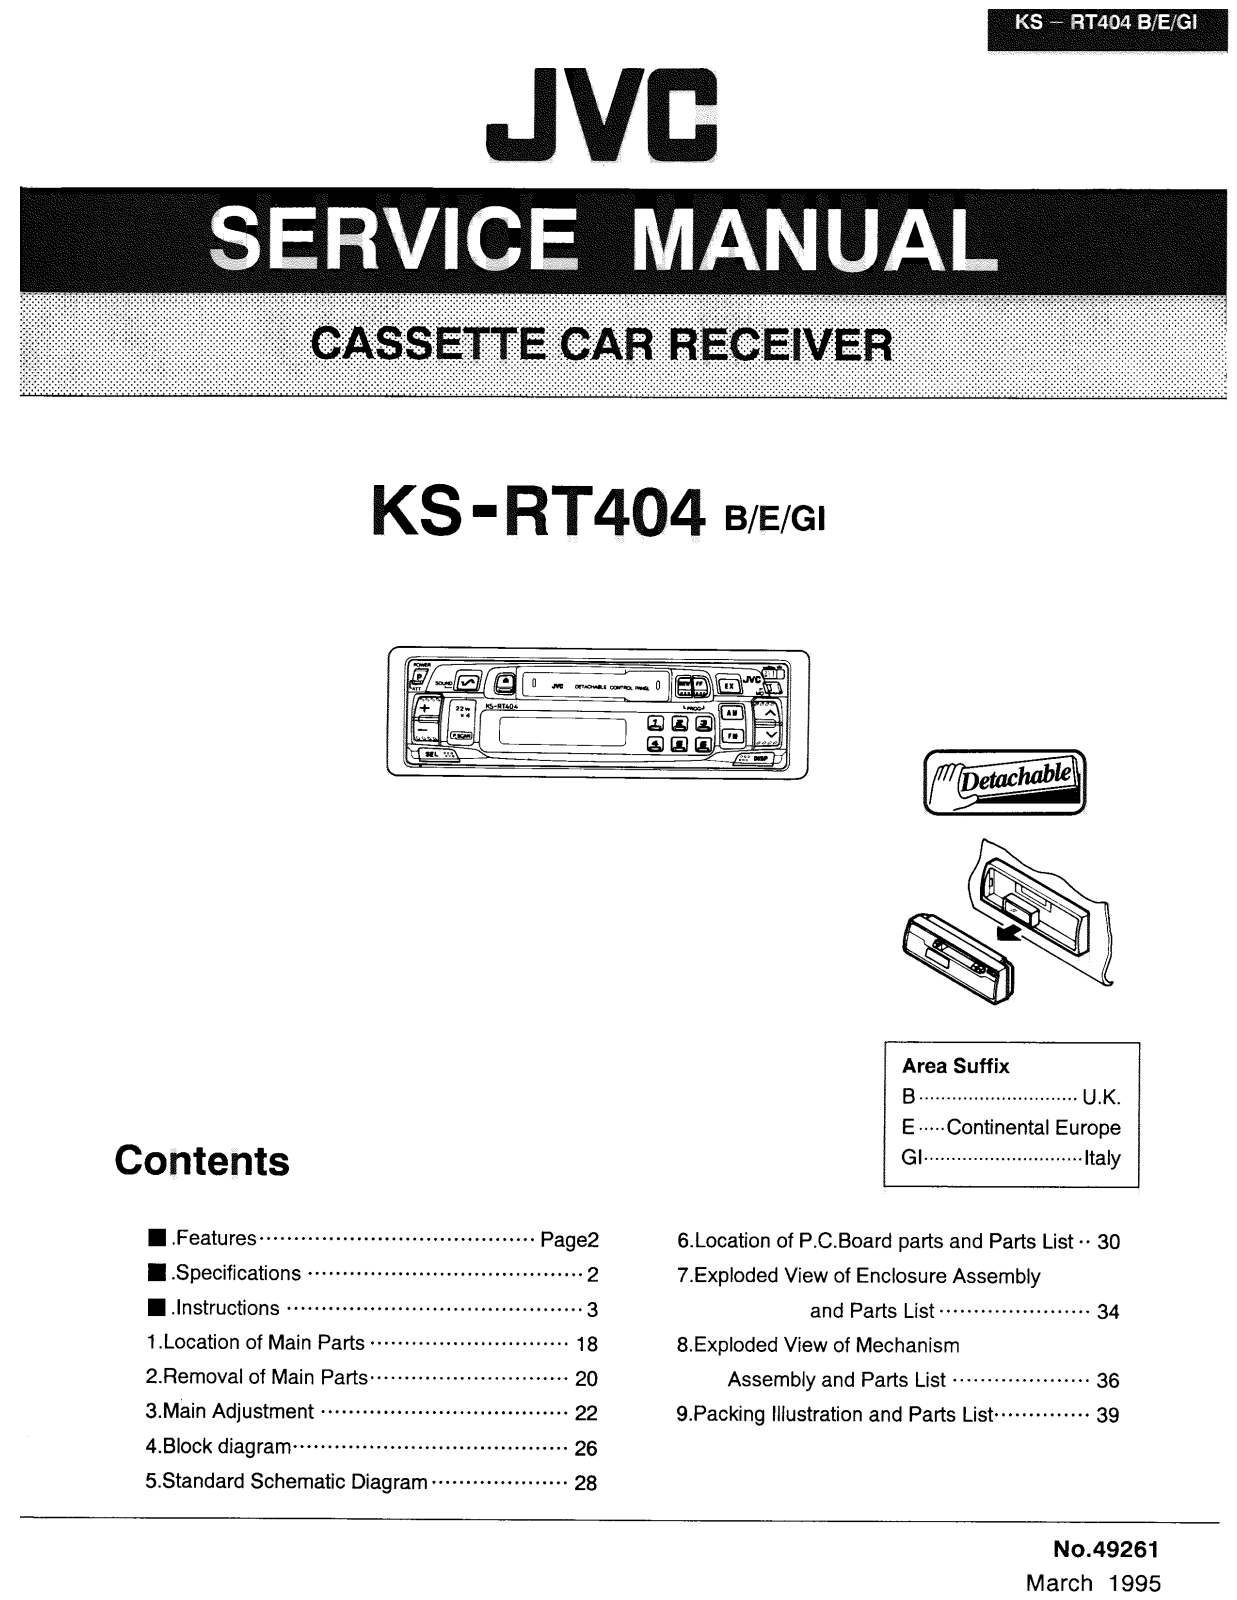 JVC KS-RT404B, KS-RT404E, KS-RT404GI Service Manual